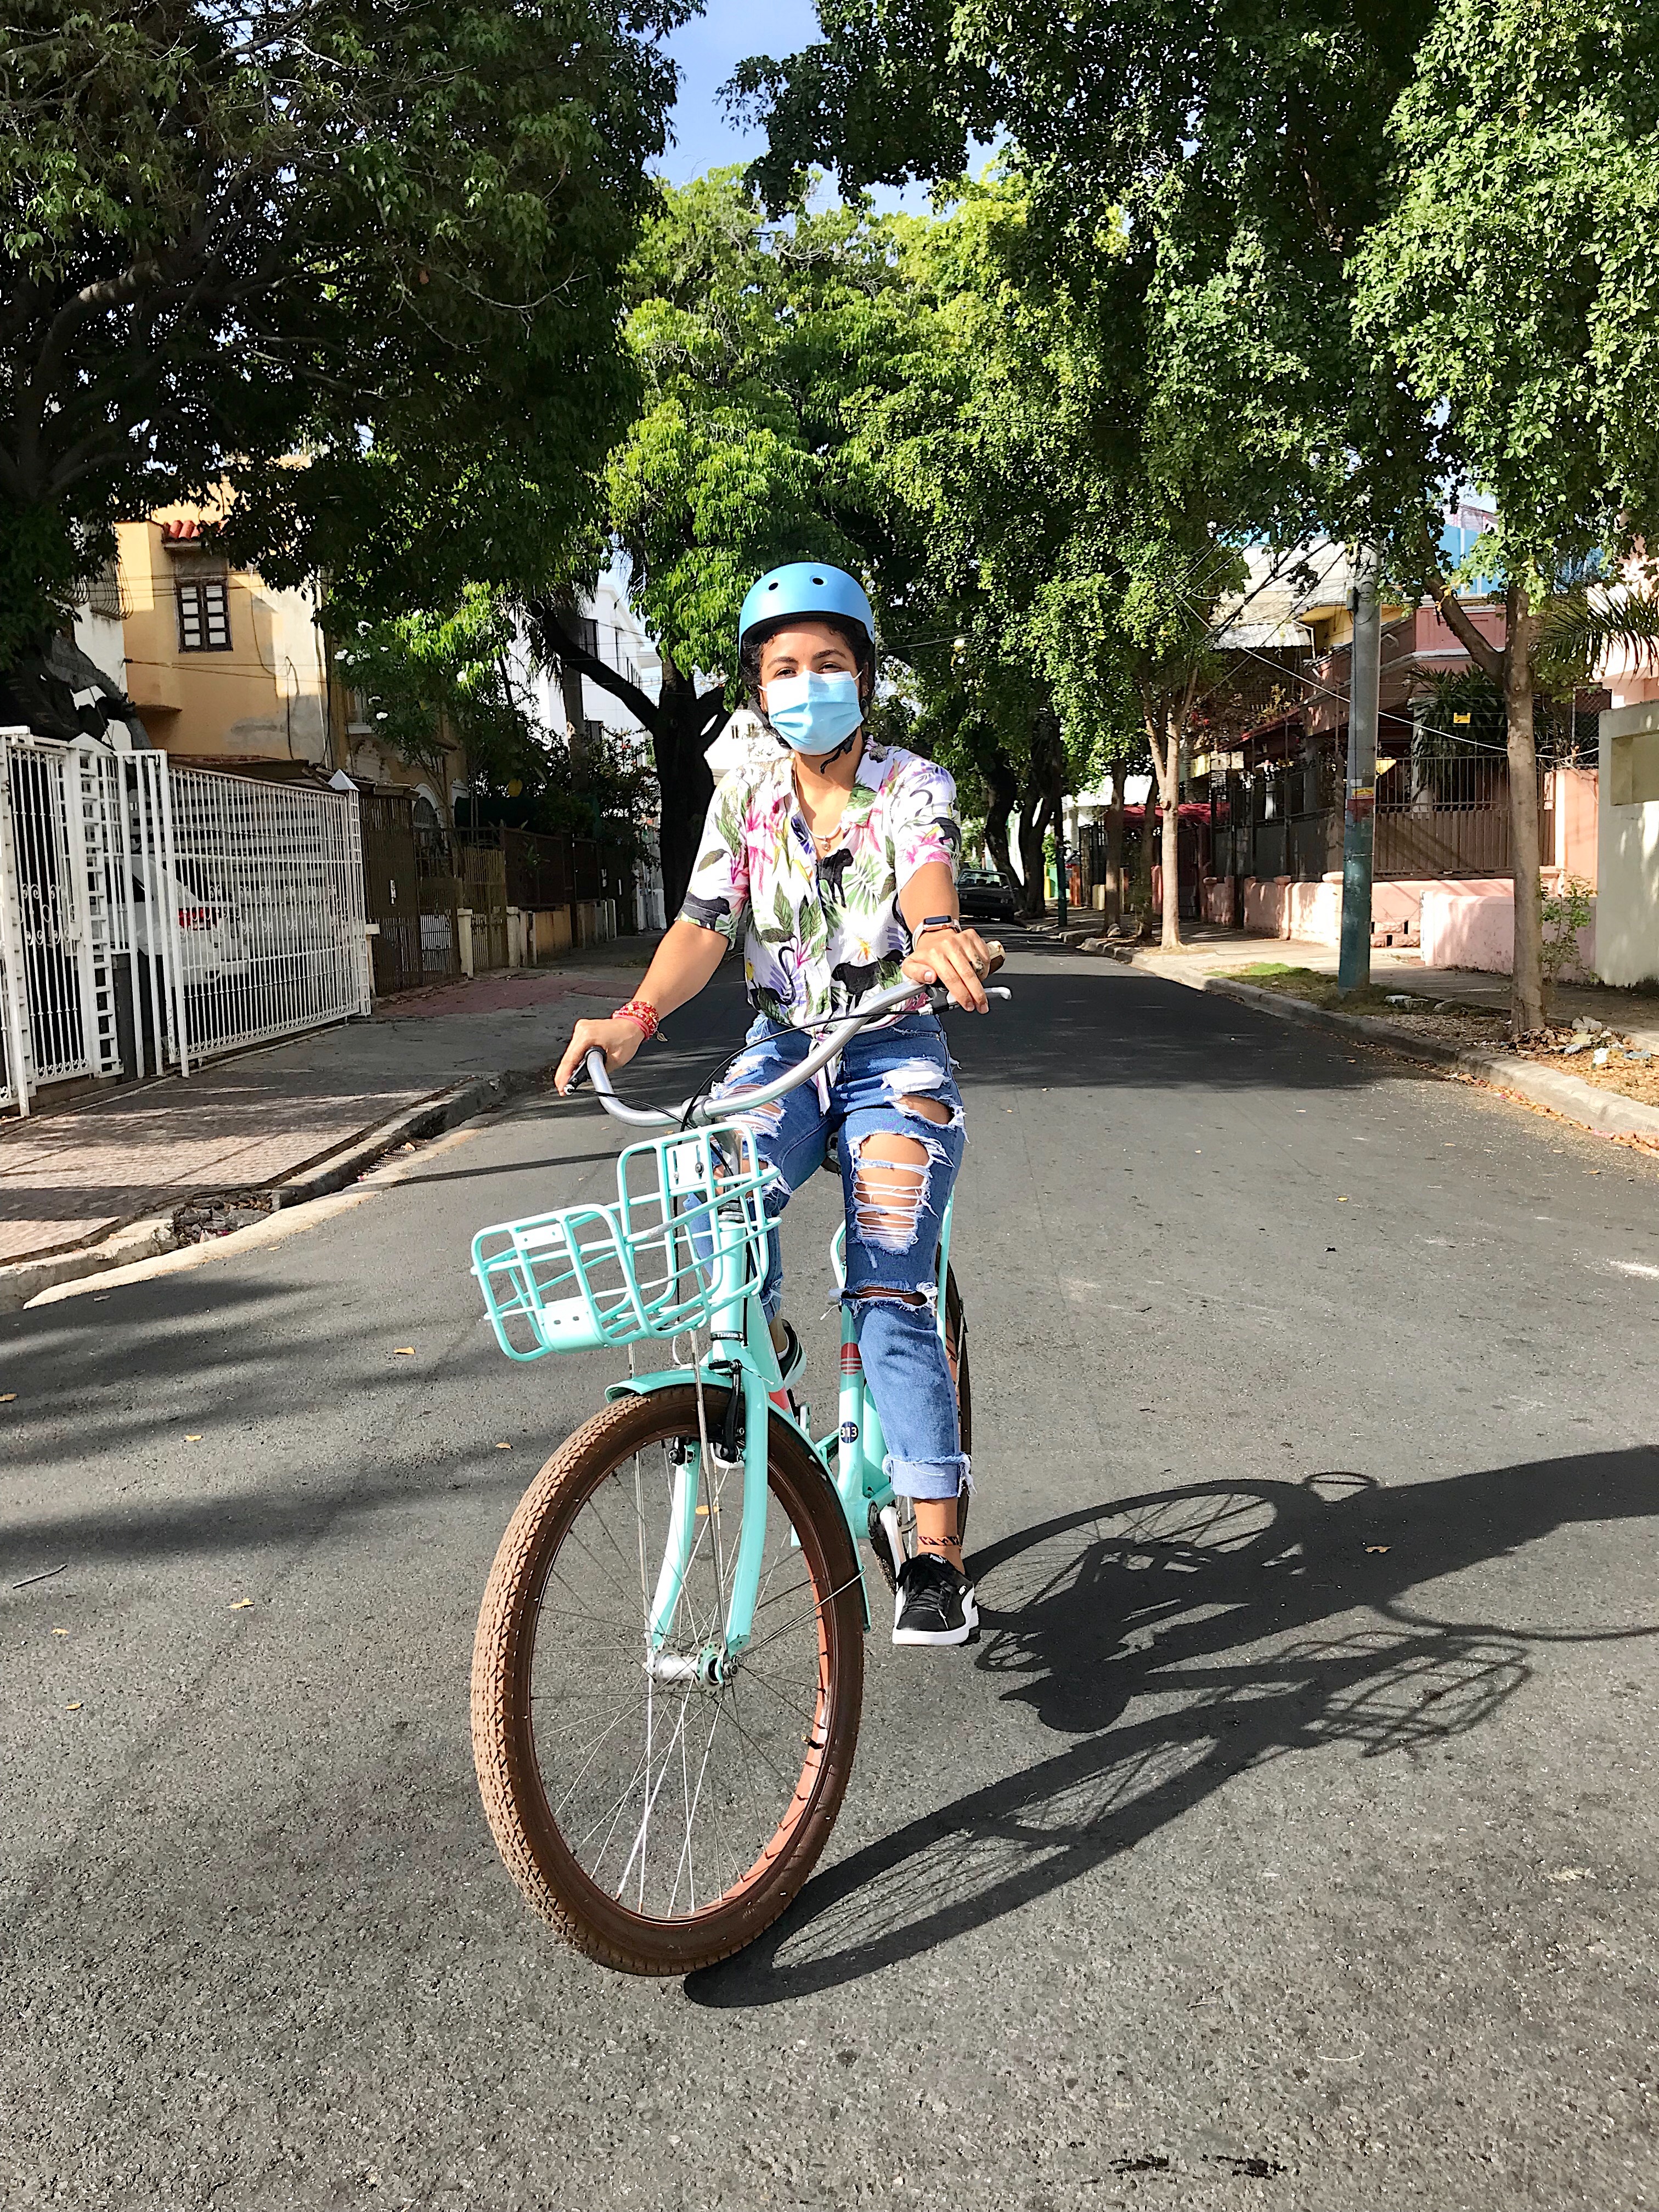 Zona Bici destaca distanciamiento social en el transporte público “sólo es posible en bicicletas”